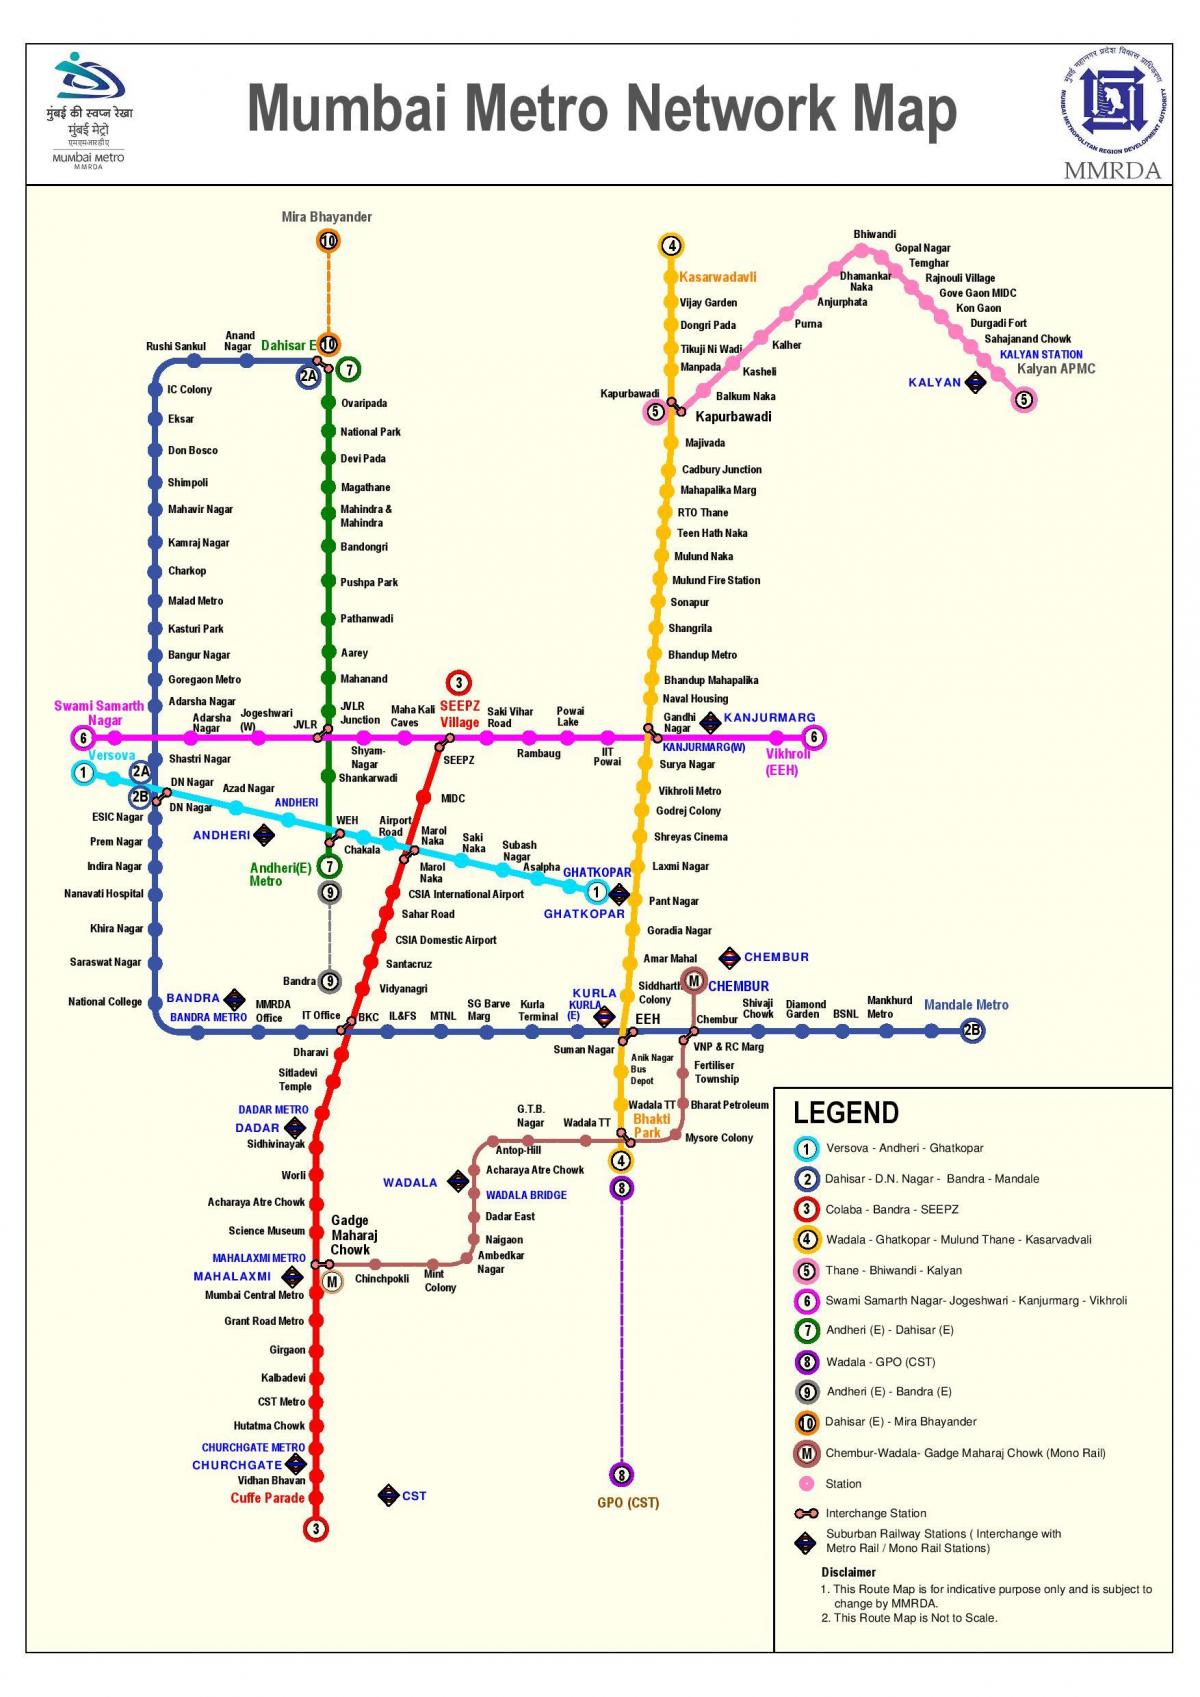 Мумбаи метро маршрутата на мапата